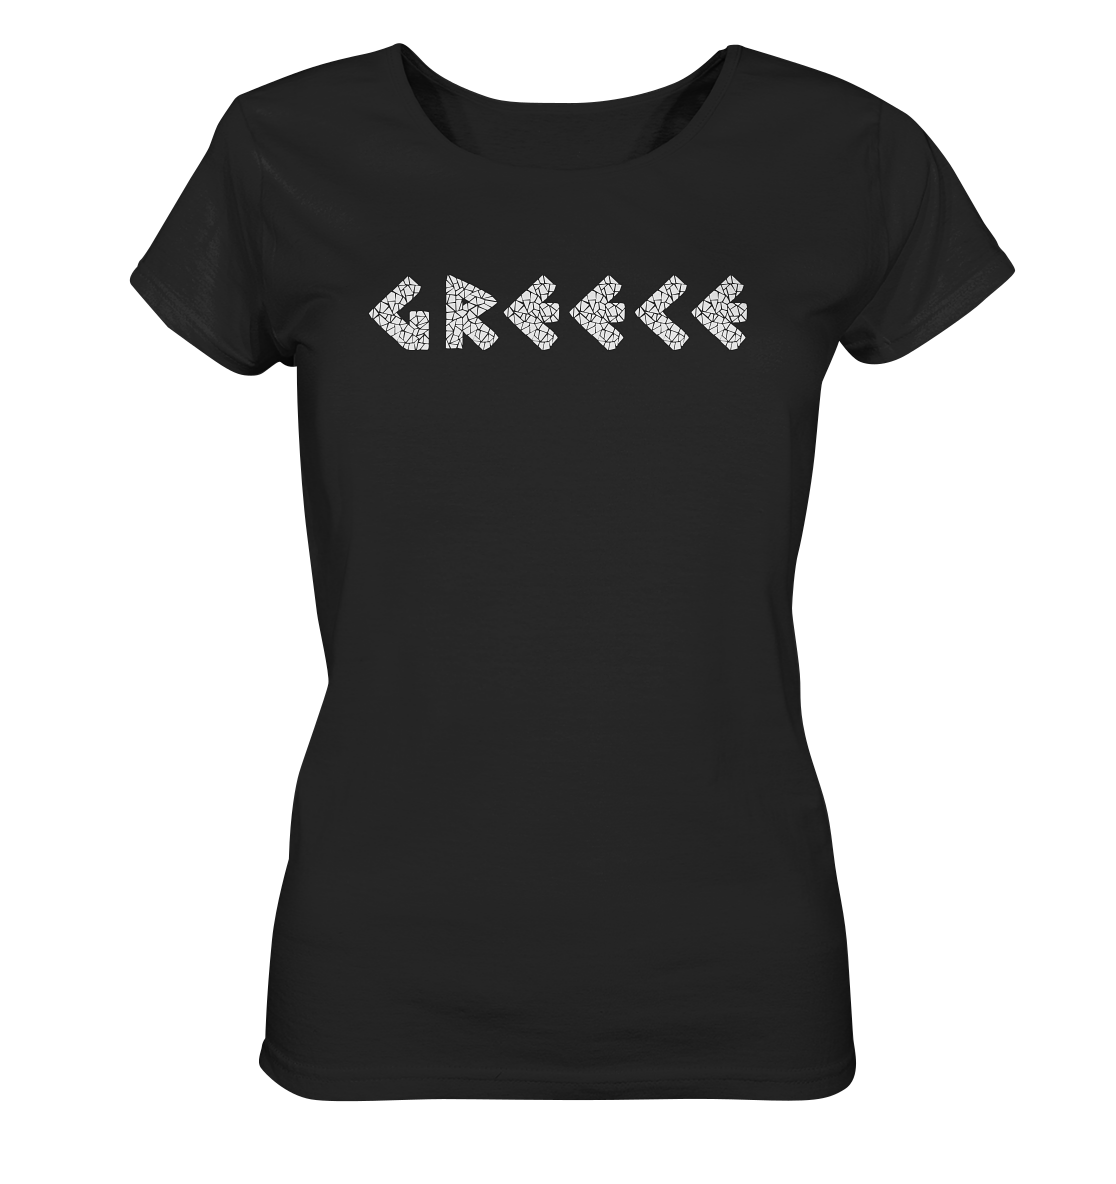 Greece Mosaik - Ladies Organic Shirt